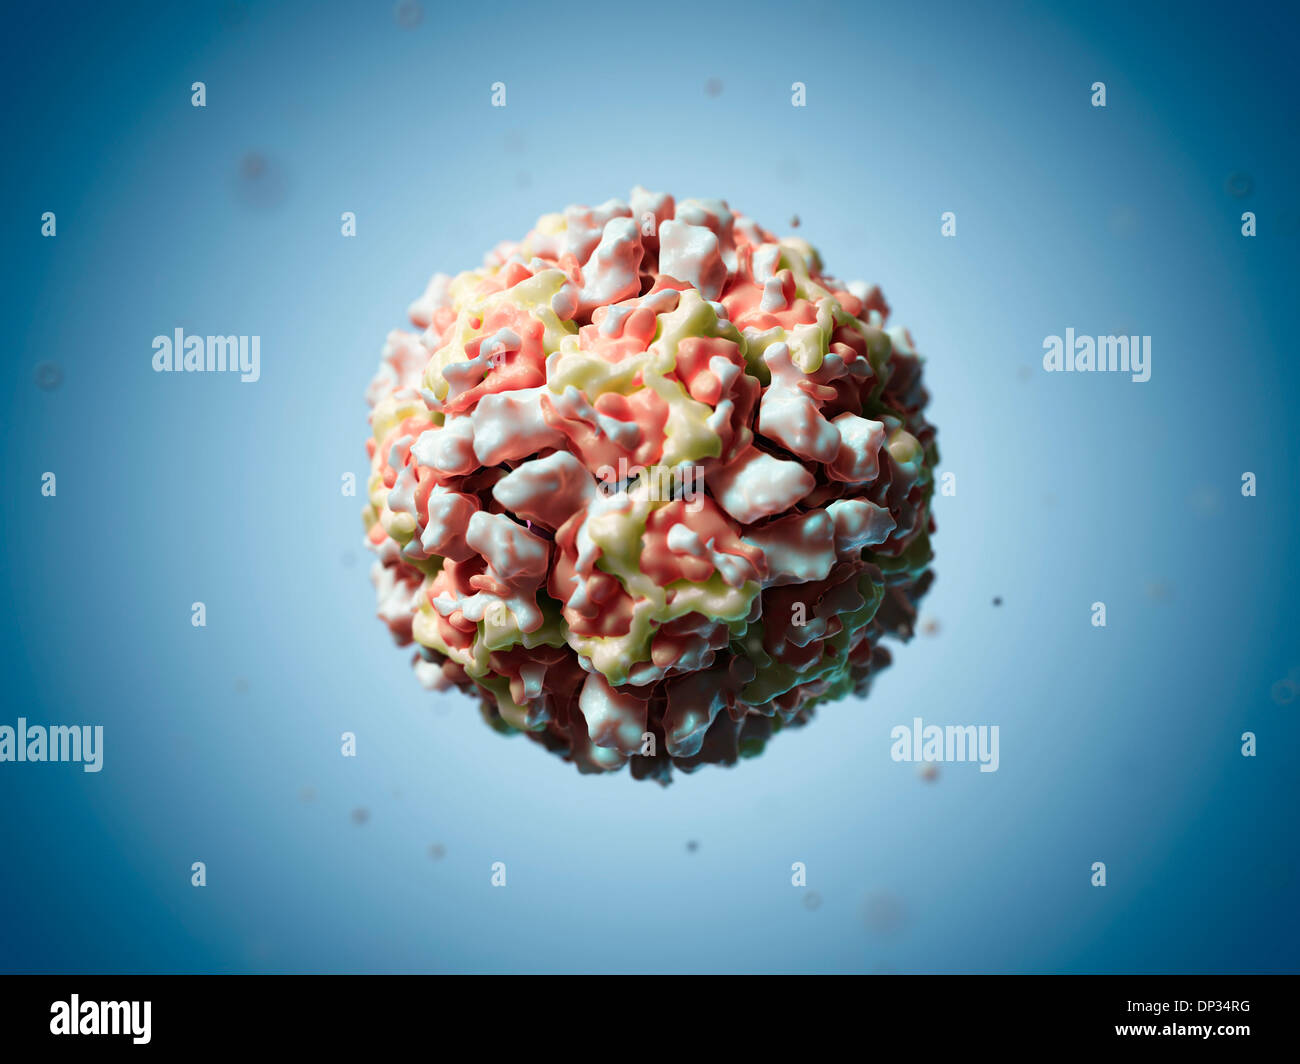 Human rhinovirus 16 particle, artwork Stock Photo